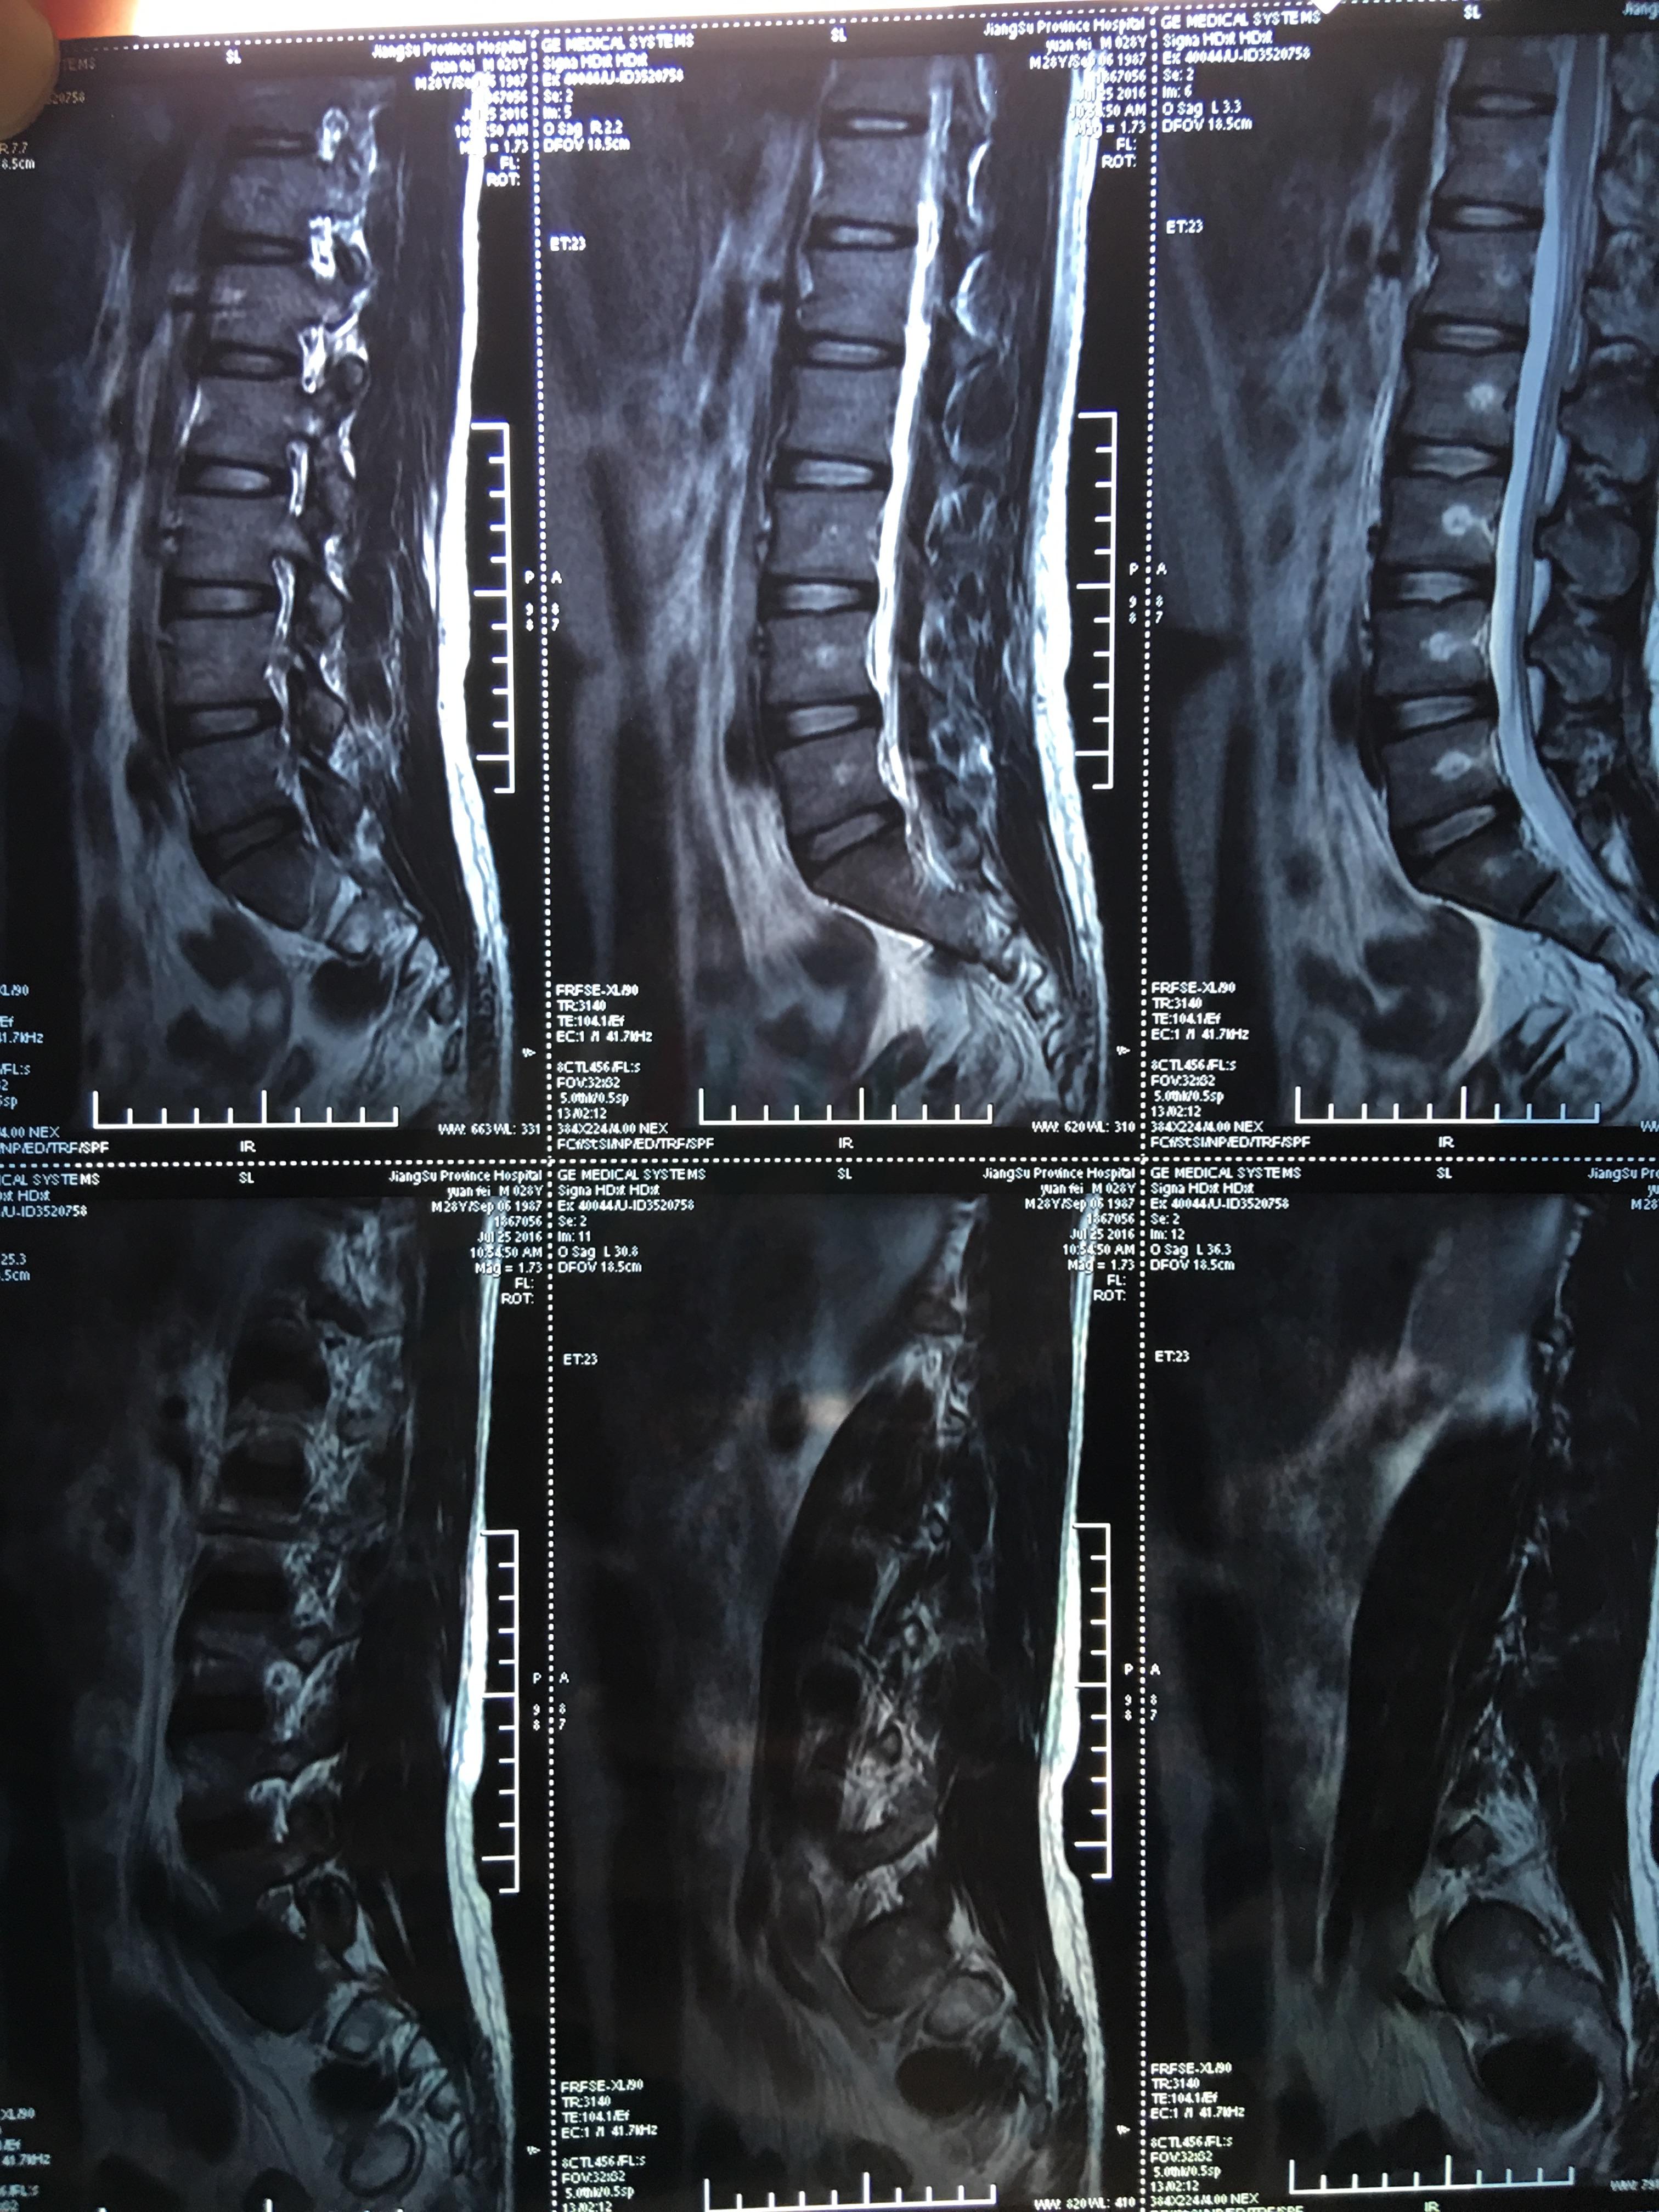 影像报告的腰椎间盘突出与腰椎间盘突出症不是一回事